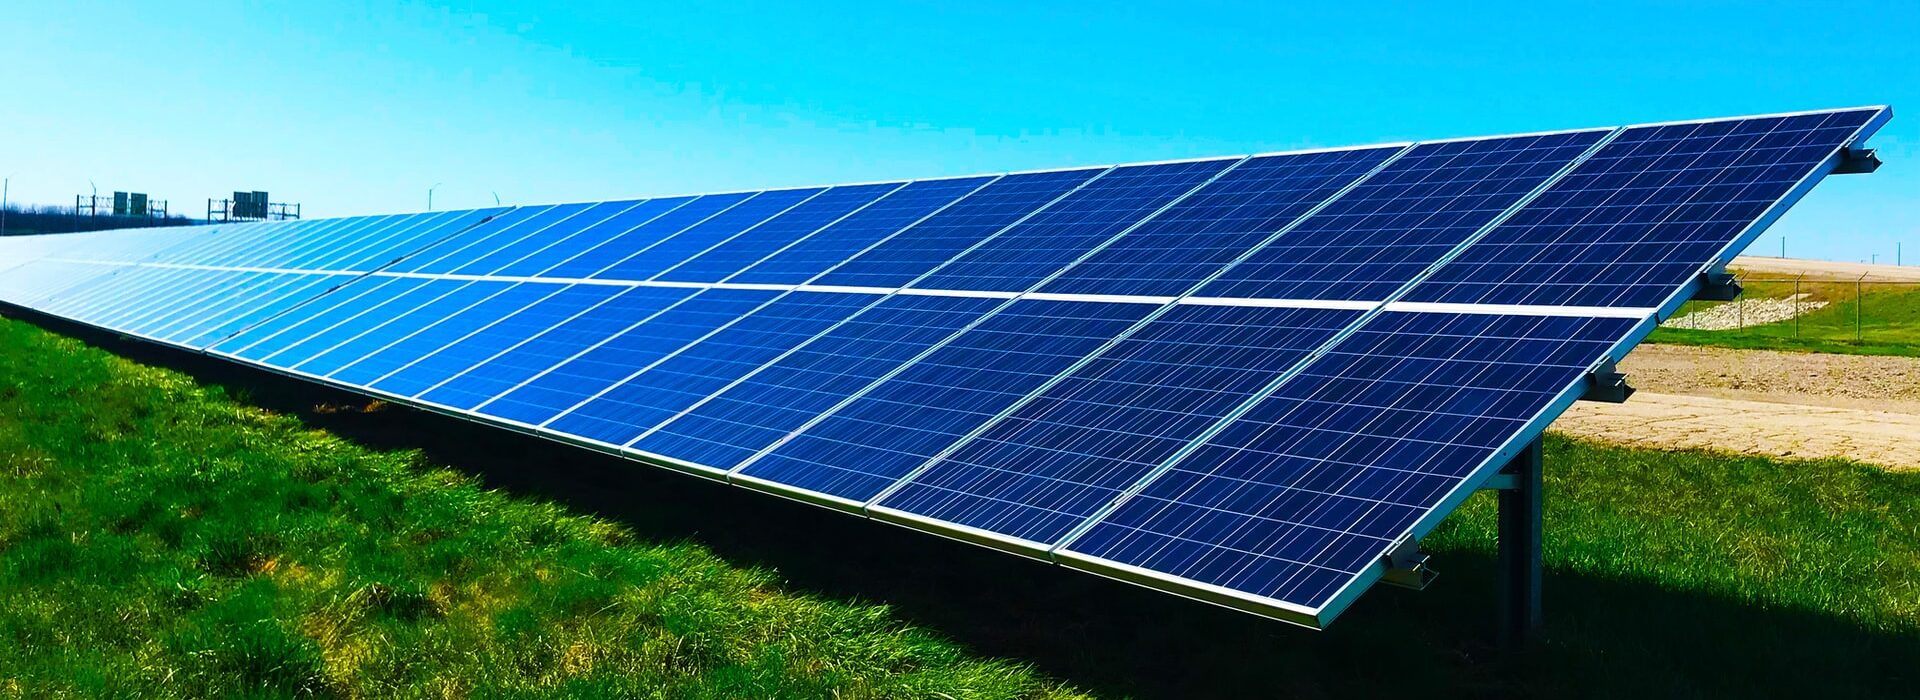 Saiba todas as vantagens e desvantagens da energia solar fotovoltaica